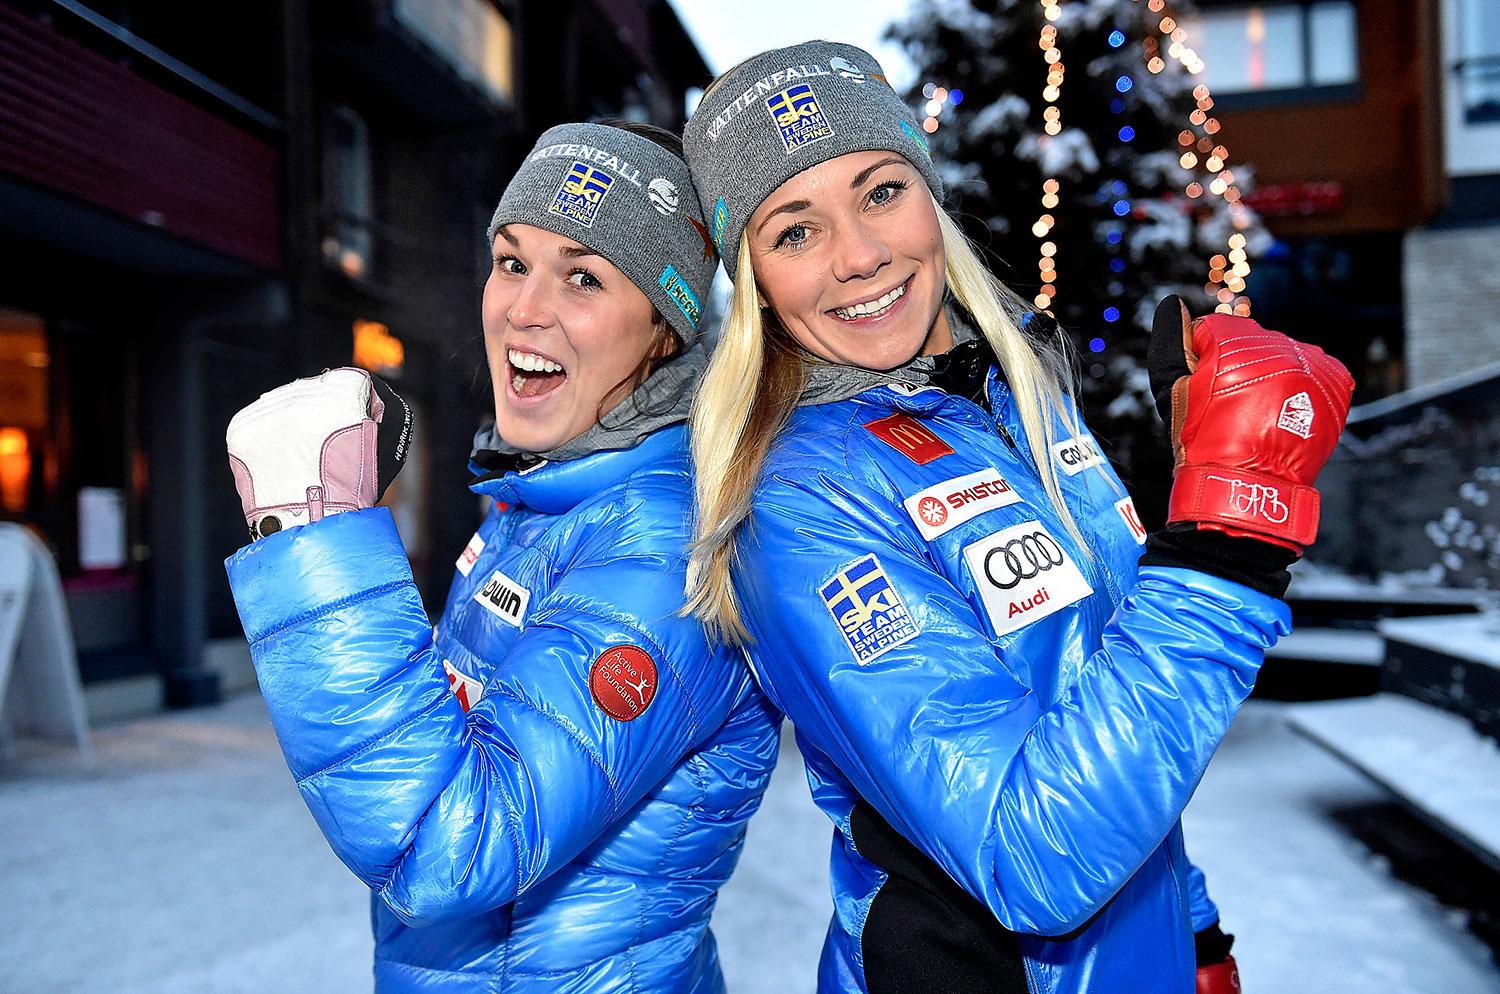 I dag inleder Maria Pietilä Holmner och Frida Hansdotter slalomvärldscupen i finländska Levi.